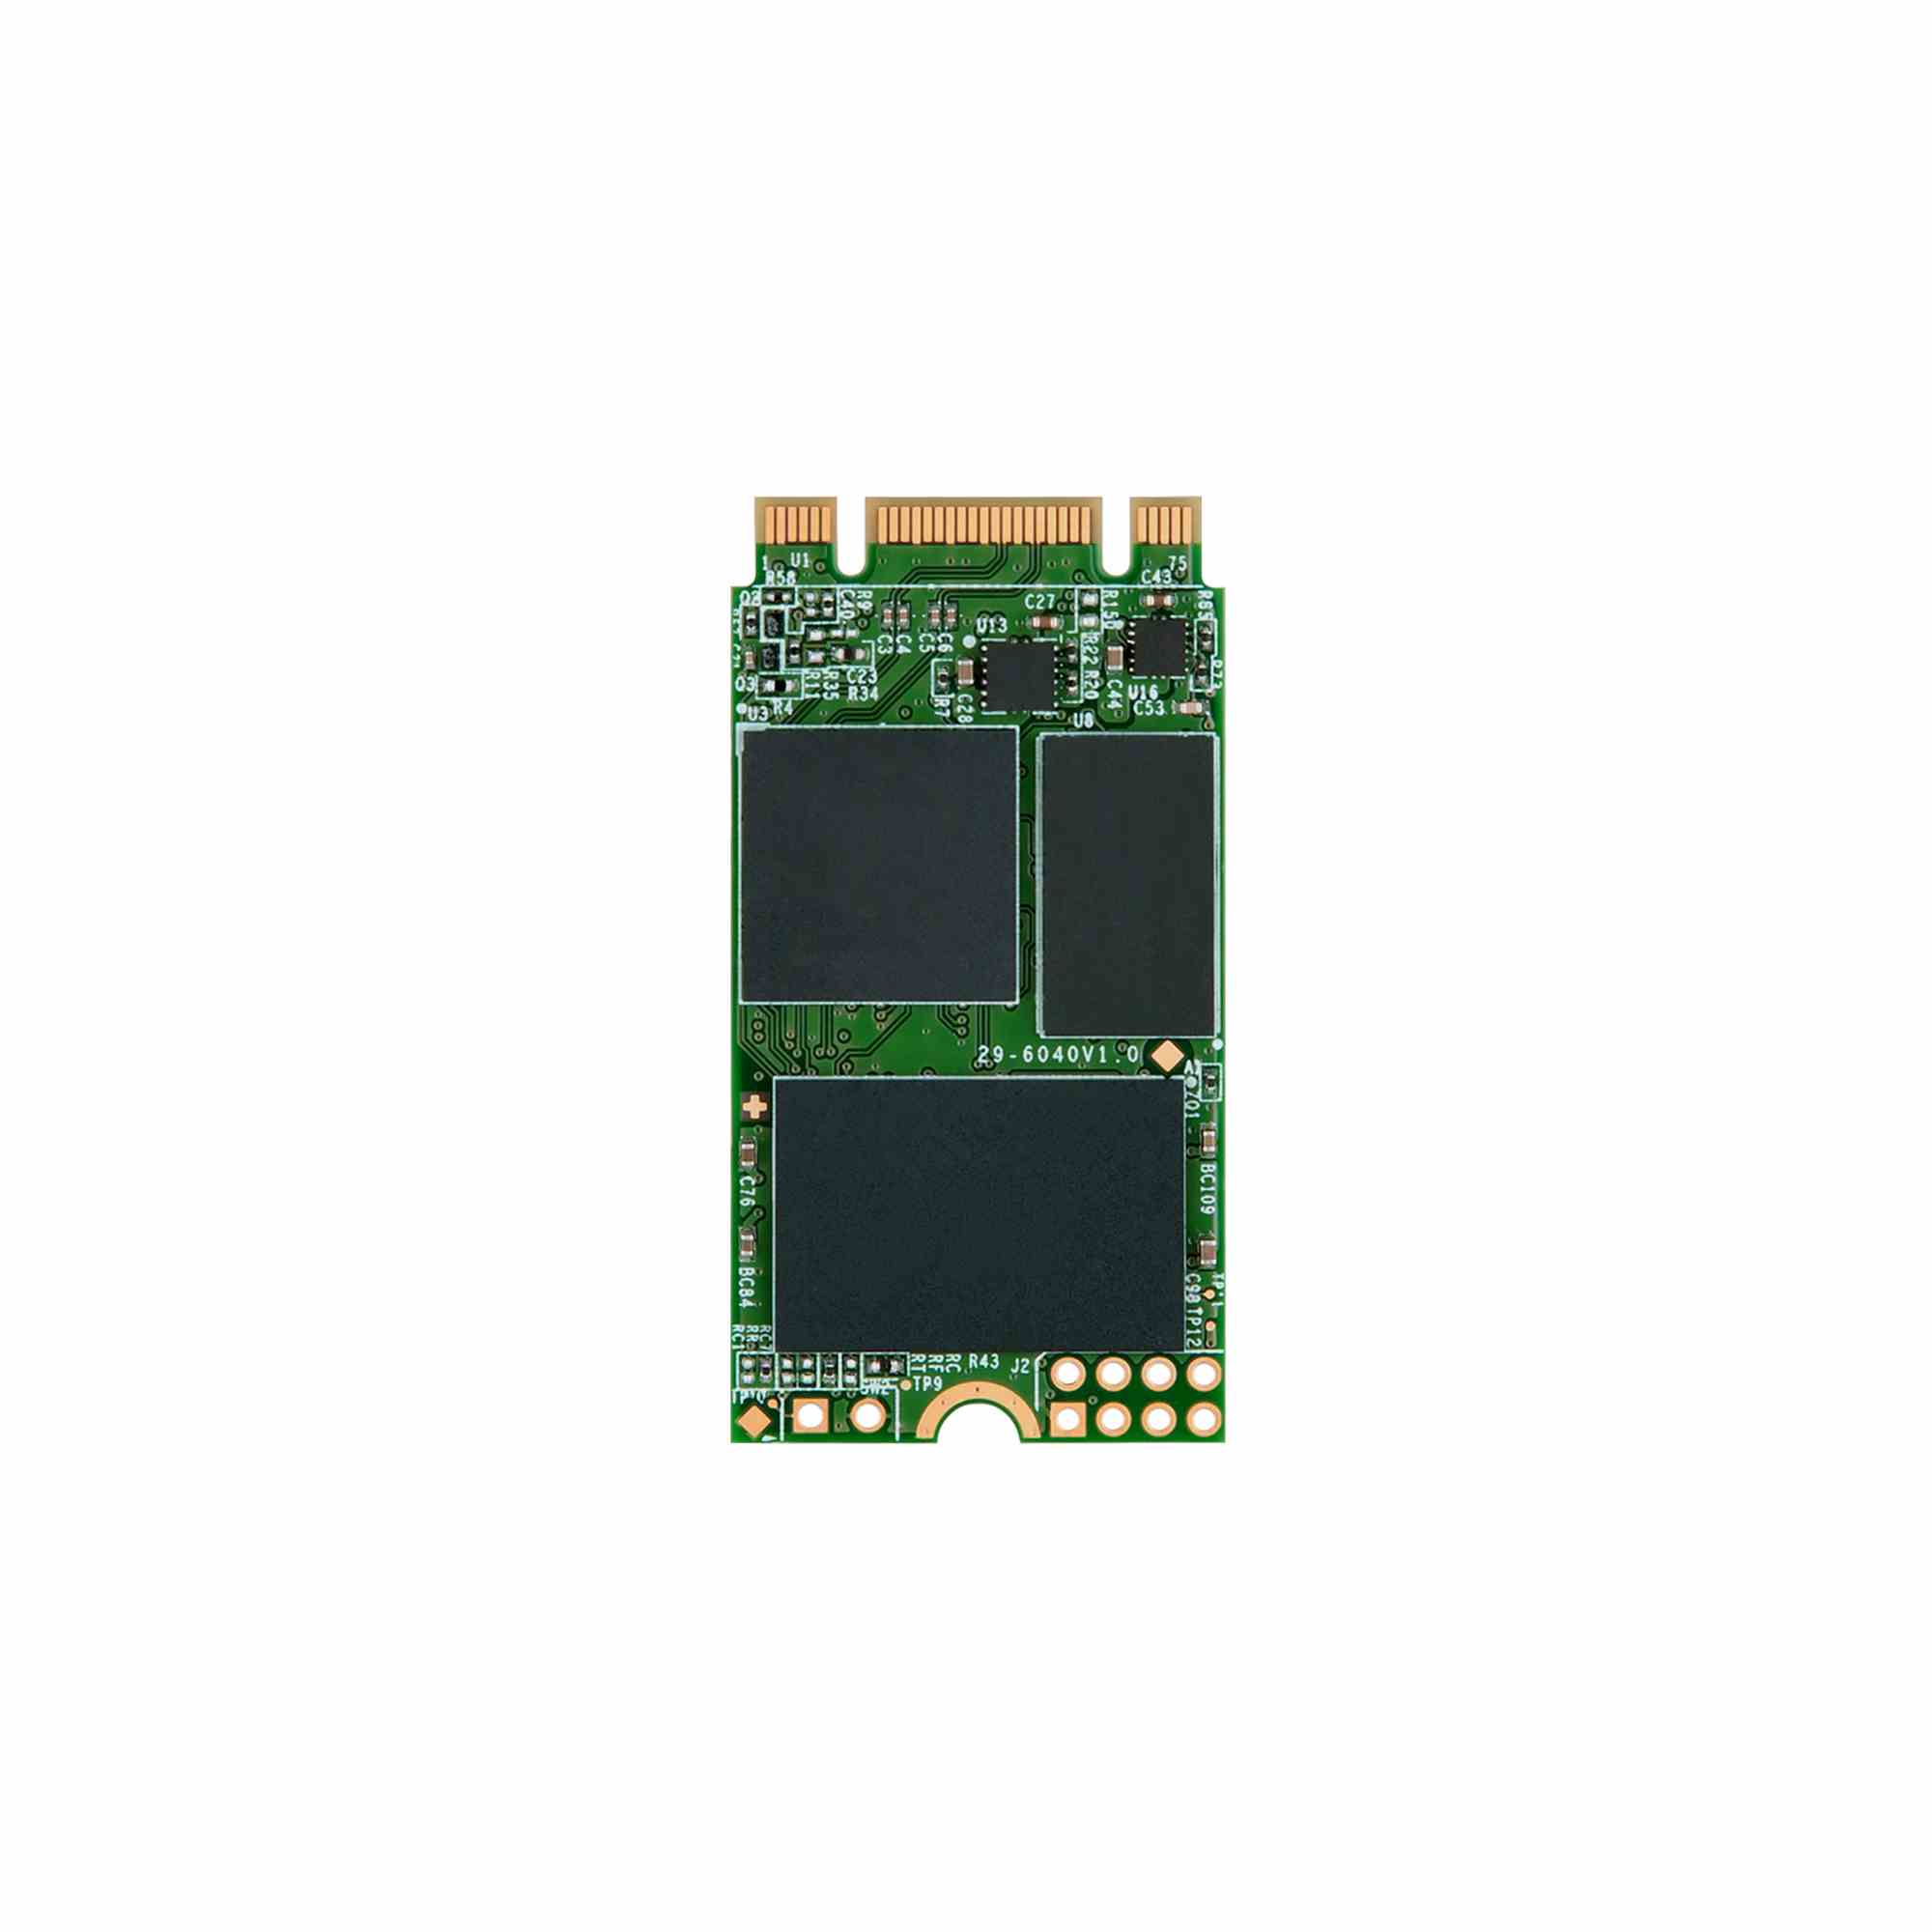 TRANSCEND Industrial SSD MTS420 240GB, M.2 2242, SATA III 6 Gb/s, TLC0 